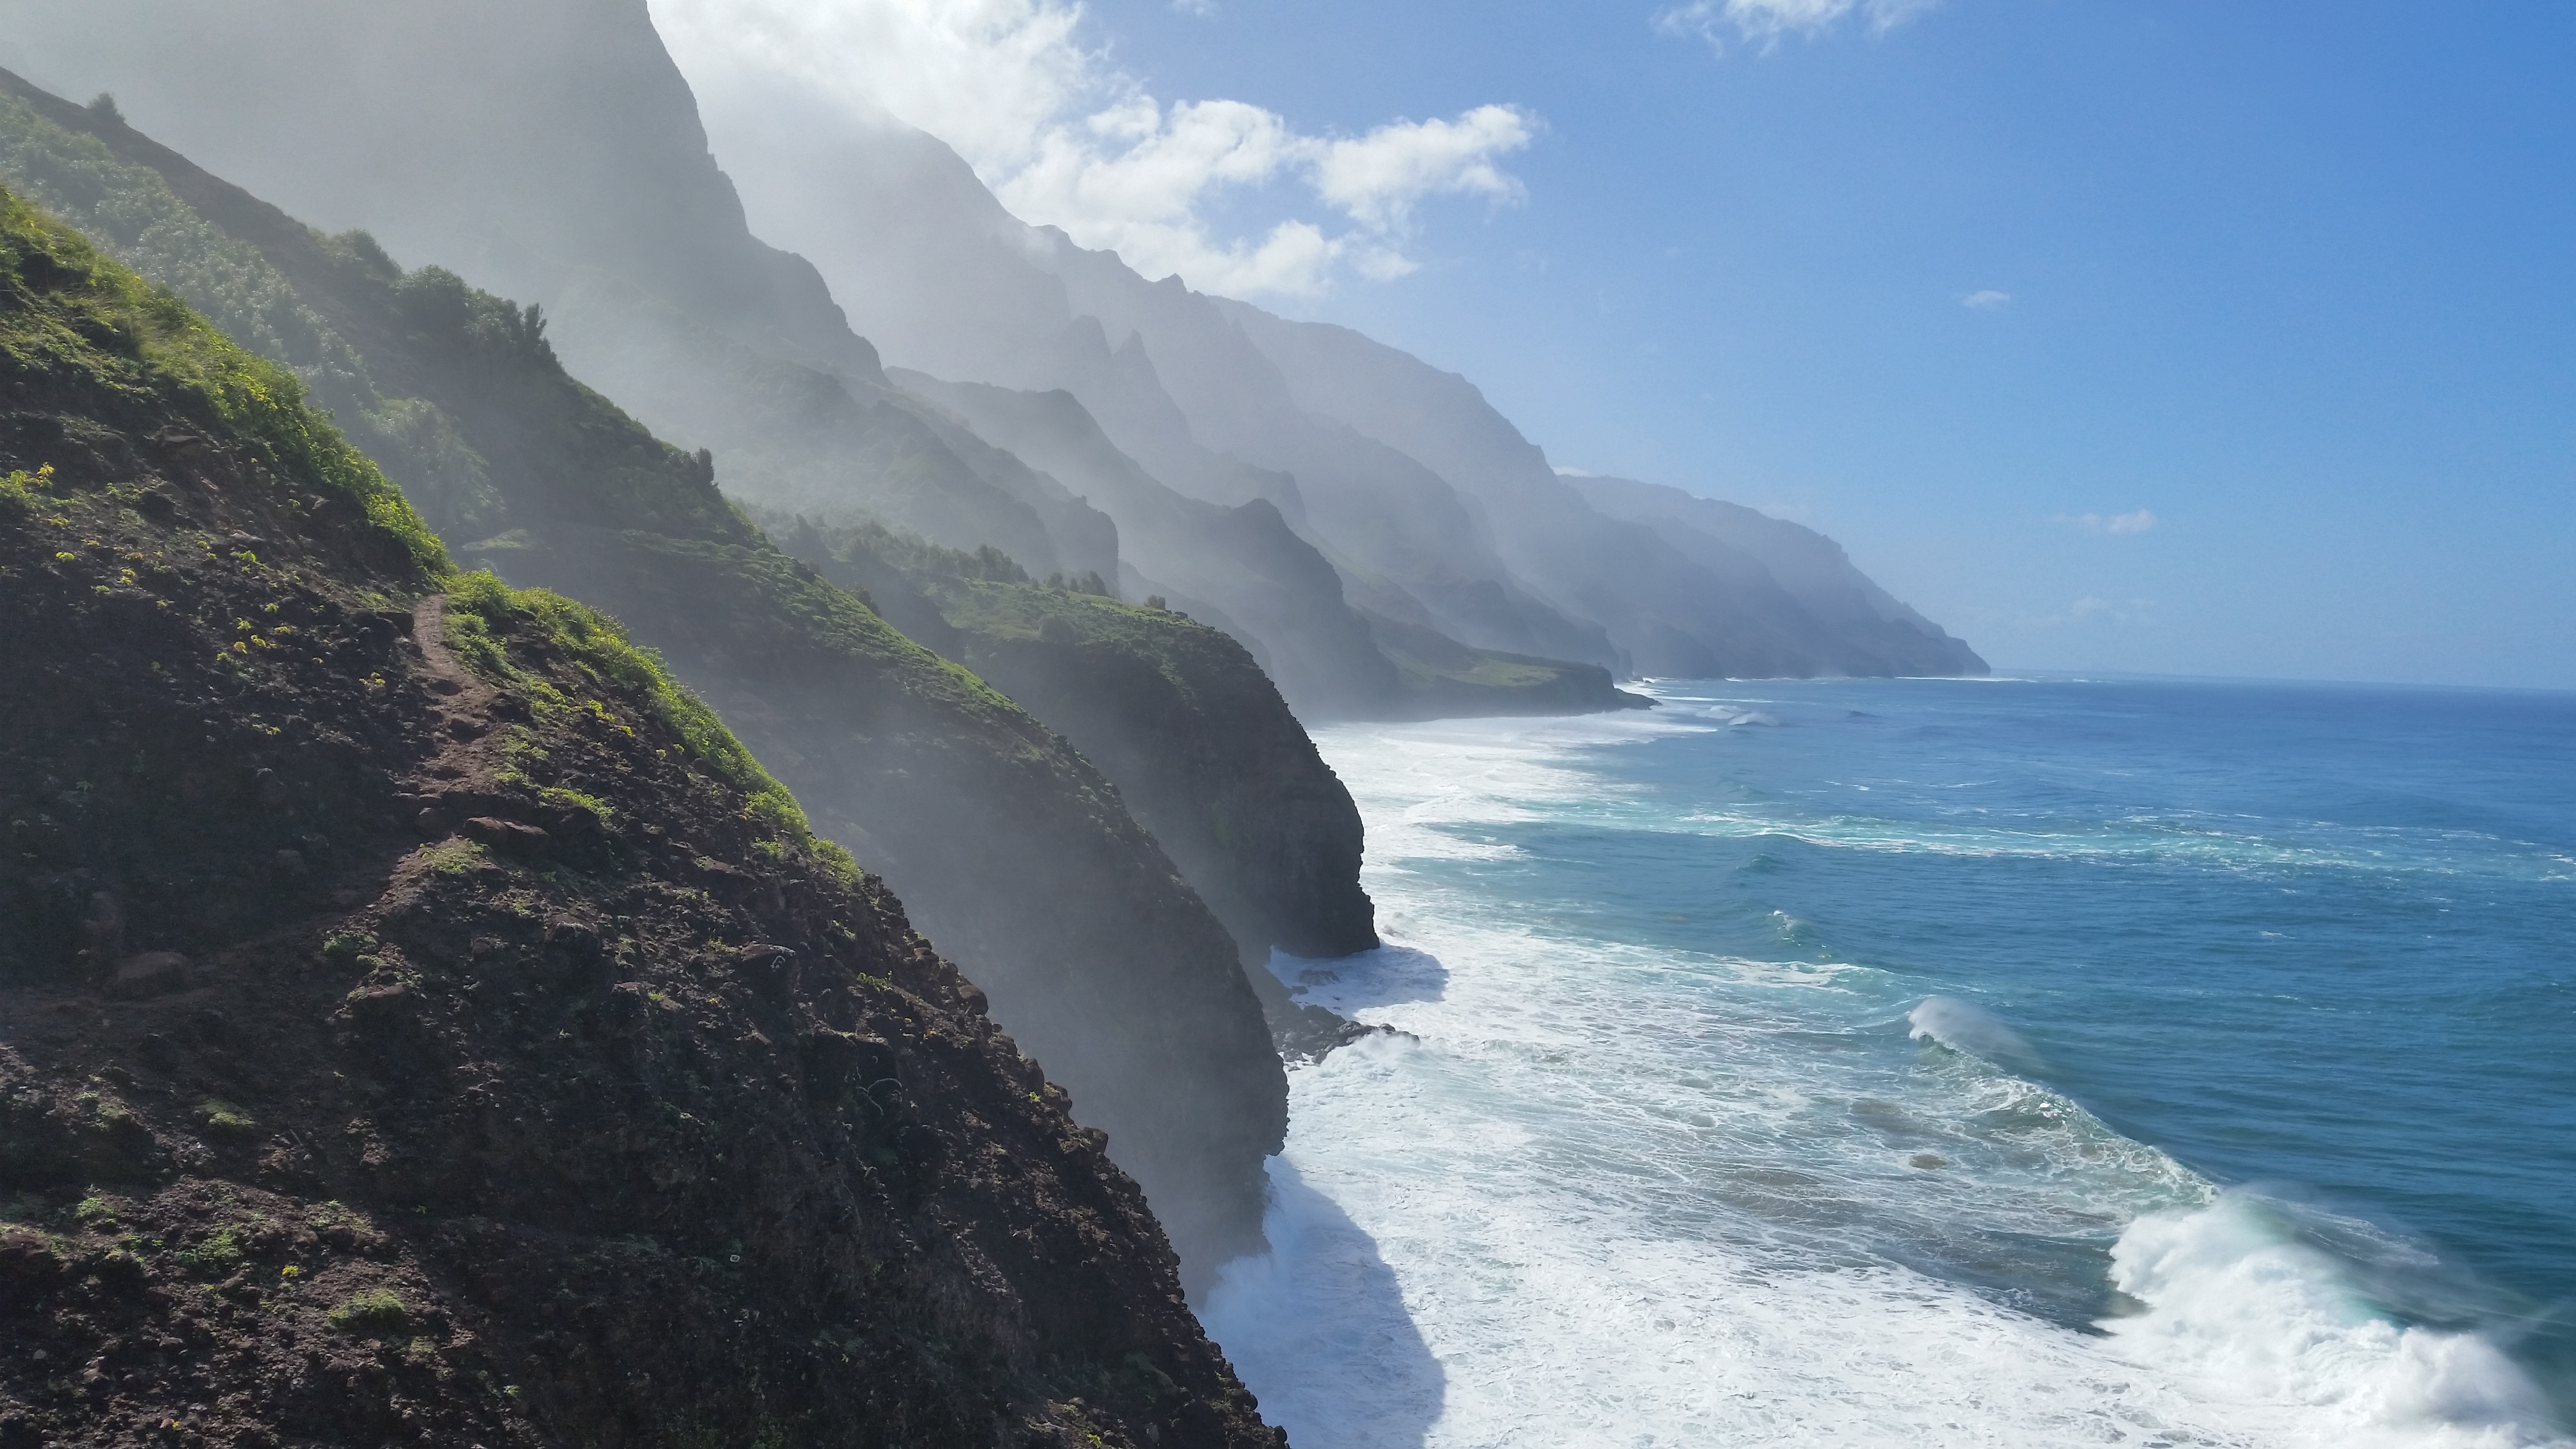  nā pali coast cliffscape, kauai island, 4.2 MB 